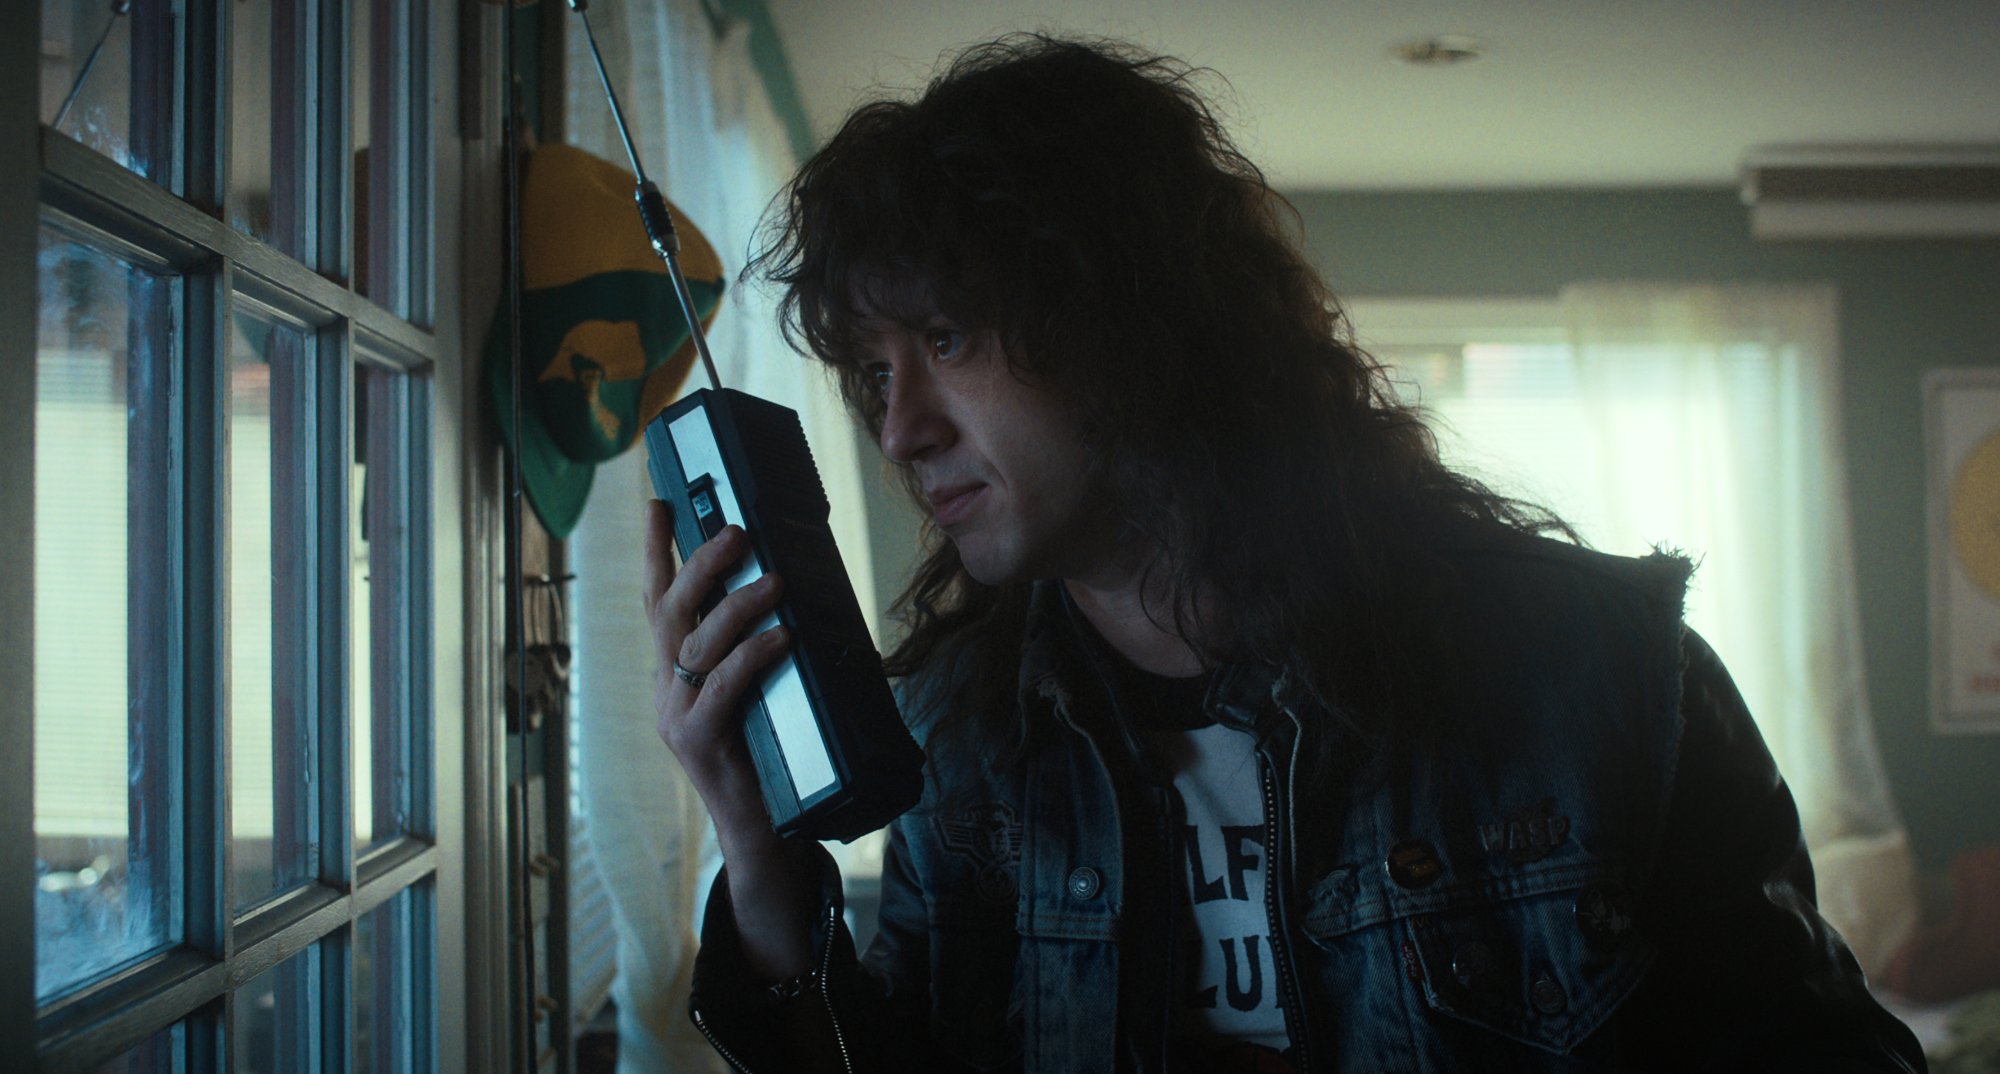 Eddie Munson using walkie-talkie while wearing DIO jean jacket in 'Stranger Things' Season 4